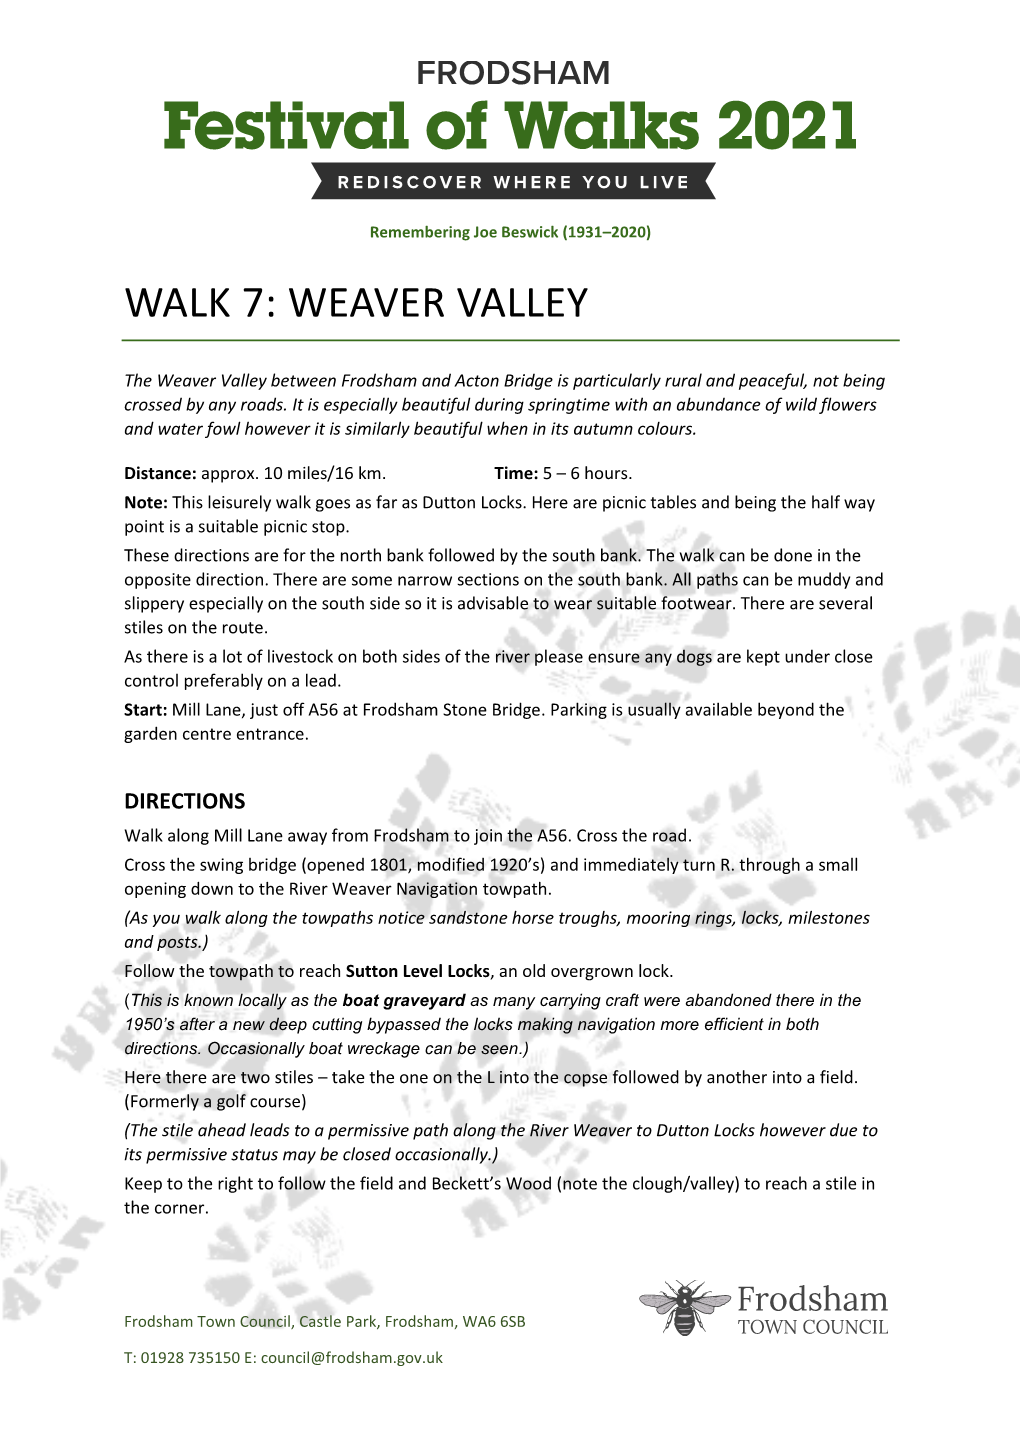 Weaver Valley